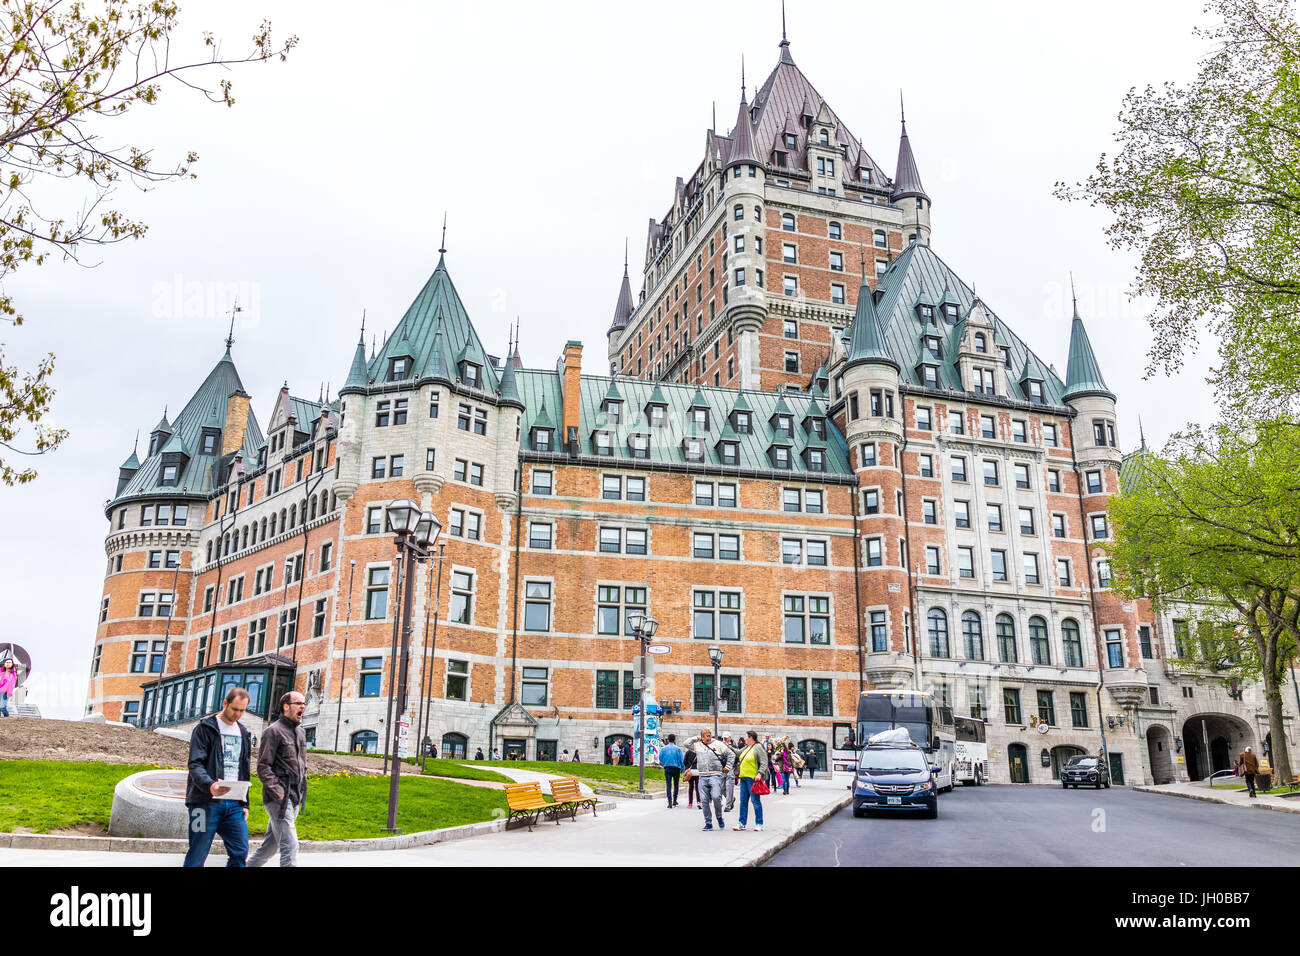 La ville de Québec, Canada - 29 mai 2017 : rue de la vieille ville avec vue sur l'hotel Chateau Frontenac avec personnes à pied Banque D'Images